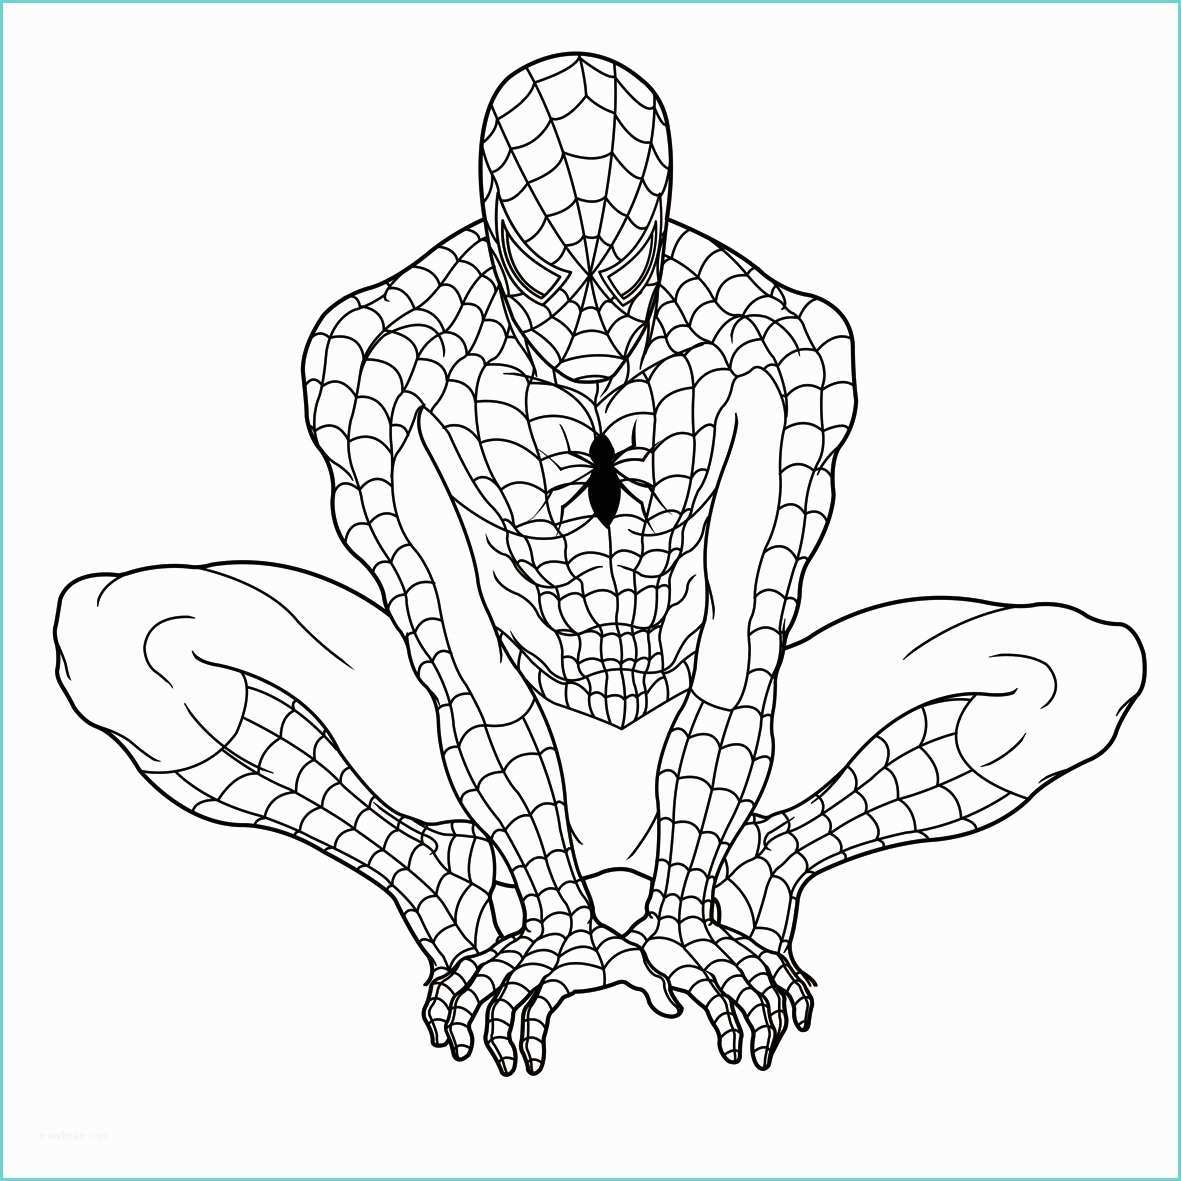 Immagini Di Spiderman Da Colorare Disegni Di Spiderman Fotogallery Donnaclick